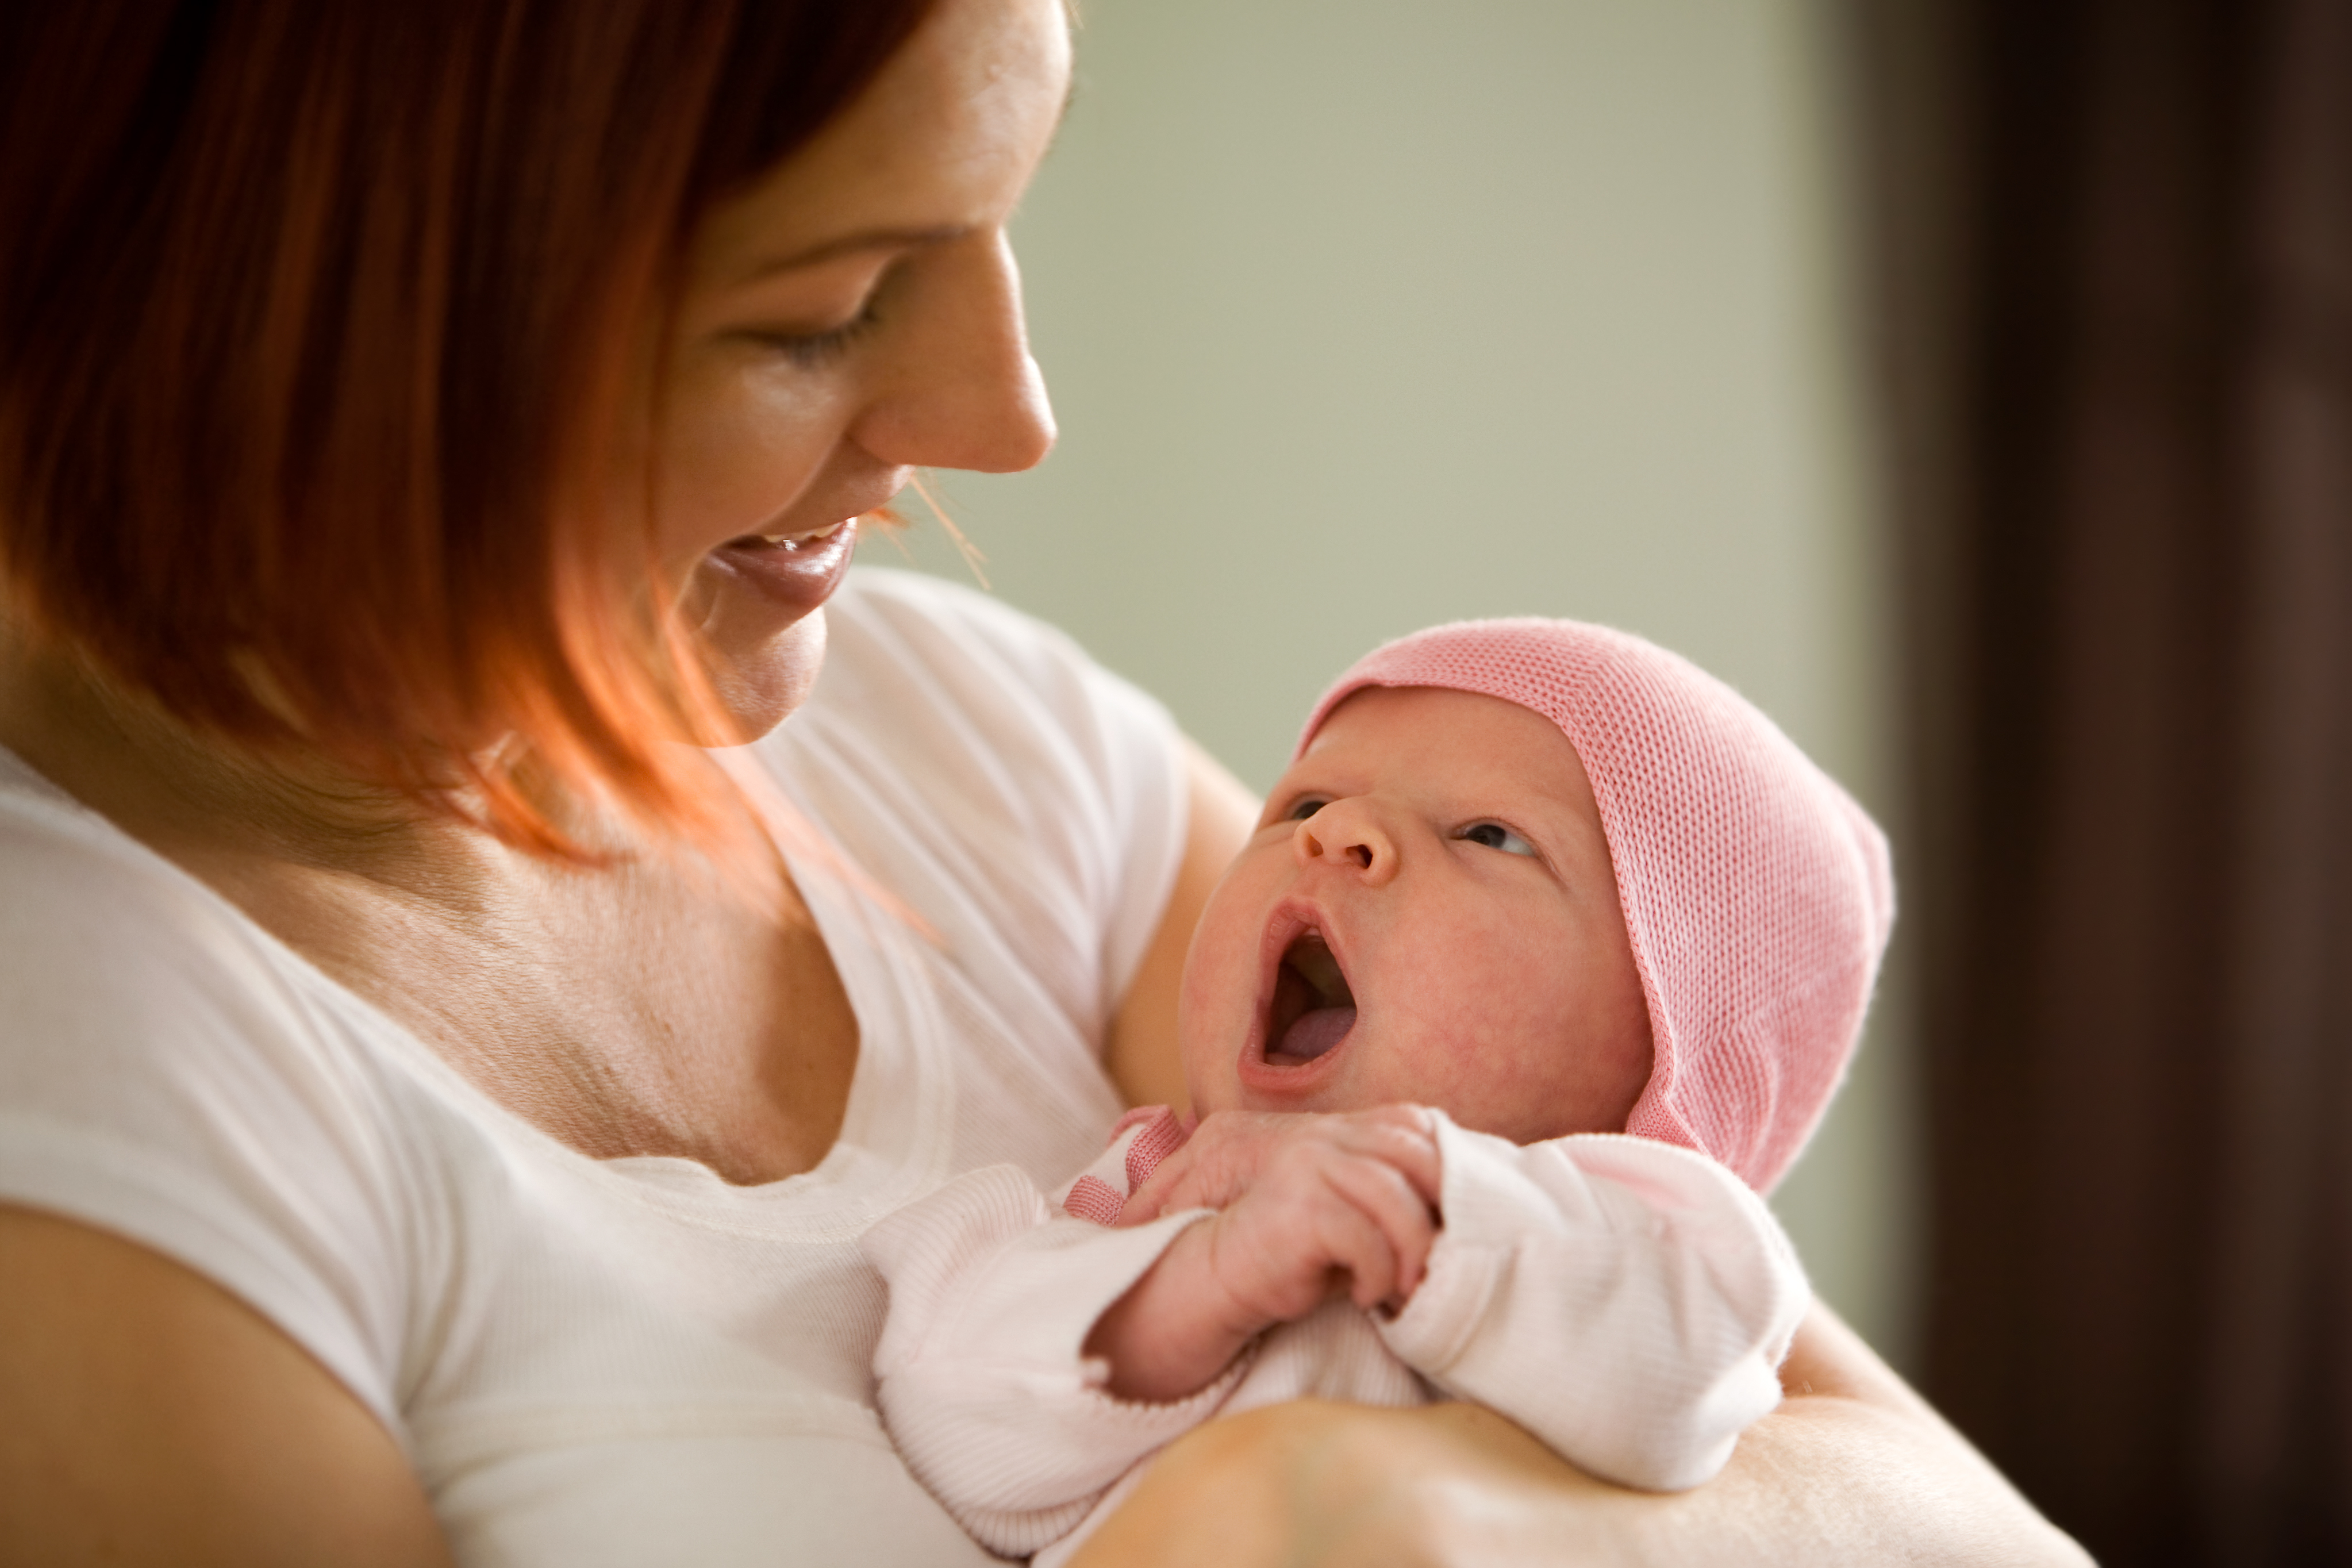 Rauhoitatko vauvaa juttelemalla? Laulaminen auttaa pidempään 